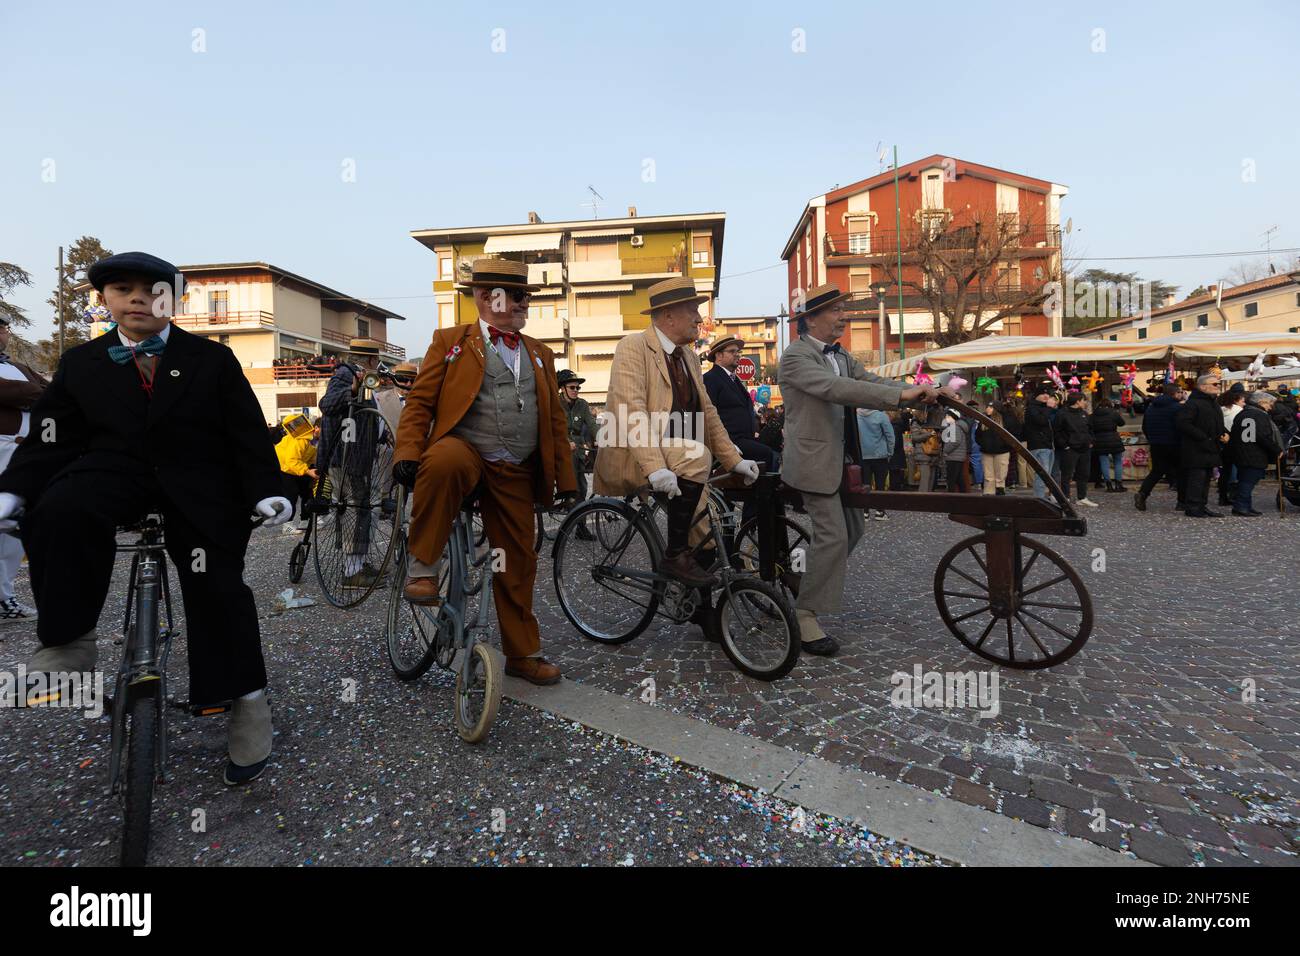 Antique Bicycle Adventure: Carnival-Goer fait une fête de Penny à travers la foule Banque D'Images